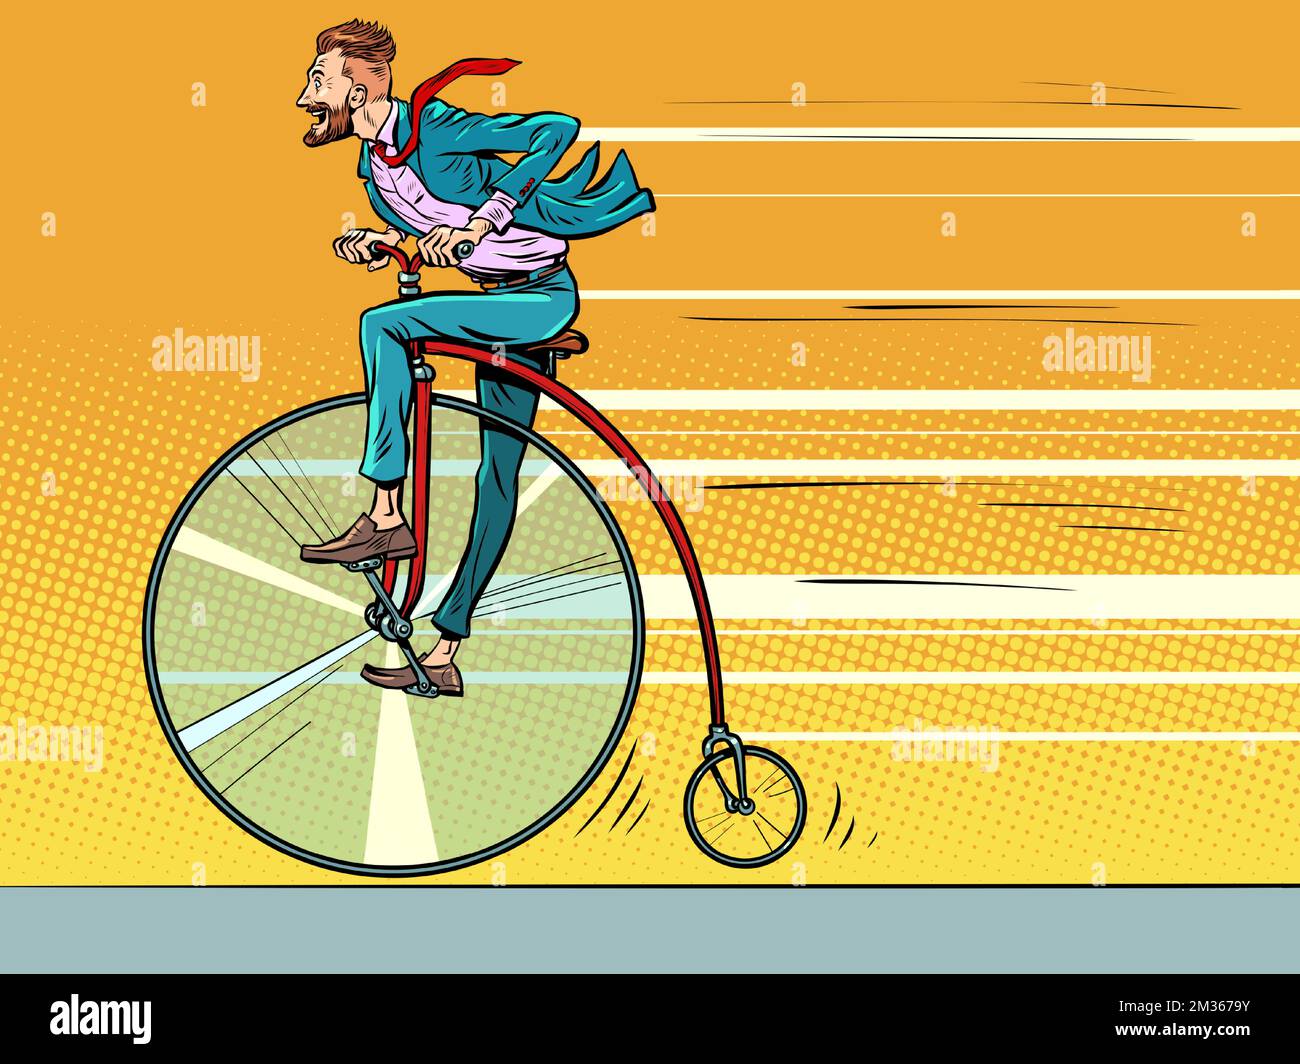 Ein billiges Retro-Bike, ein großes Rad. Geschäftsmann reitet schnell vorwärts, Fortschritt Stock Vektor